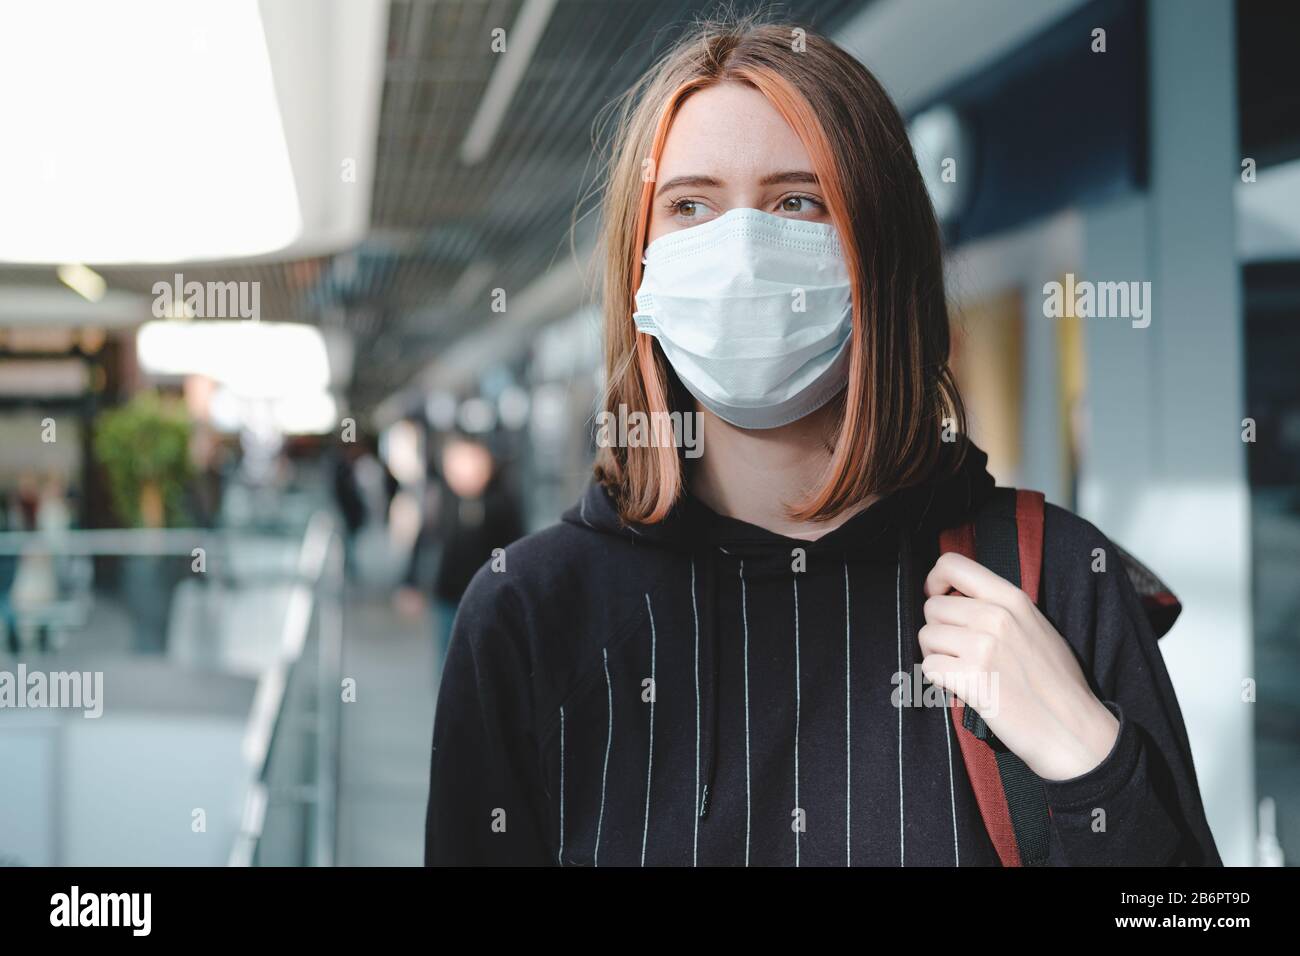 Frau in einer schützenden Gesichtsmaske am öffentlichen Ort. Coronavirus, COVID-19 Spread Prevention Concept, verantwortungsbewusstes Sozialverhalten eines Bürgers Stockfoto